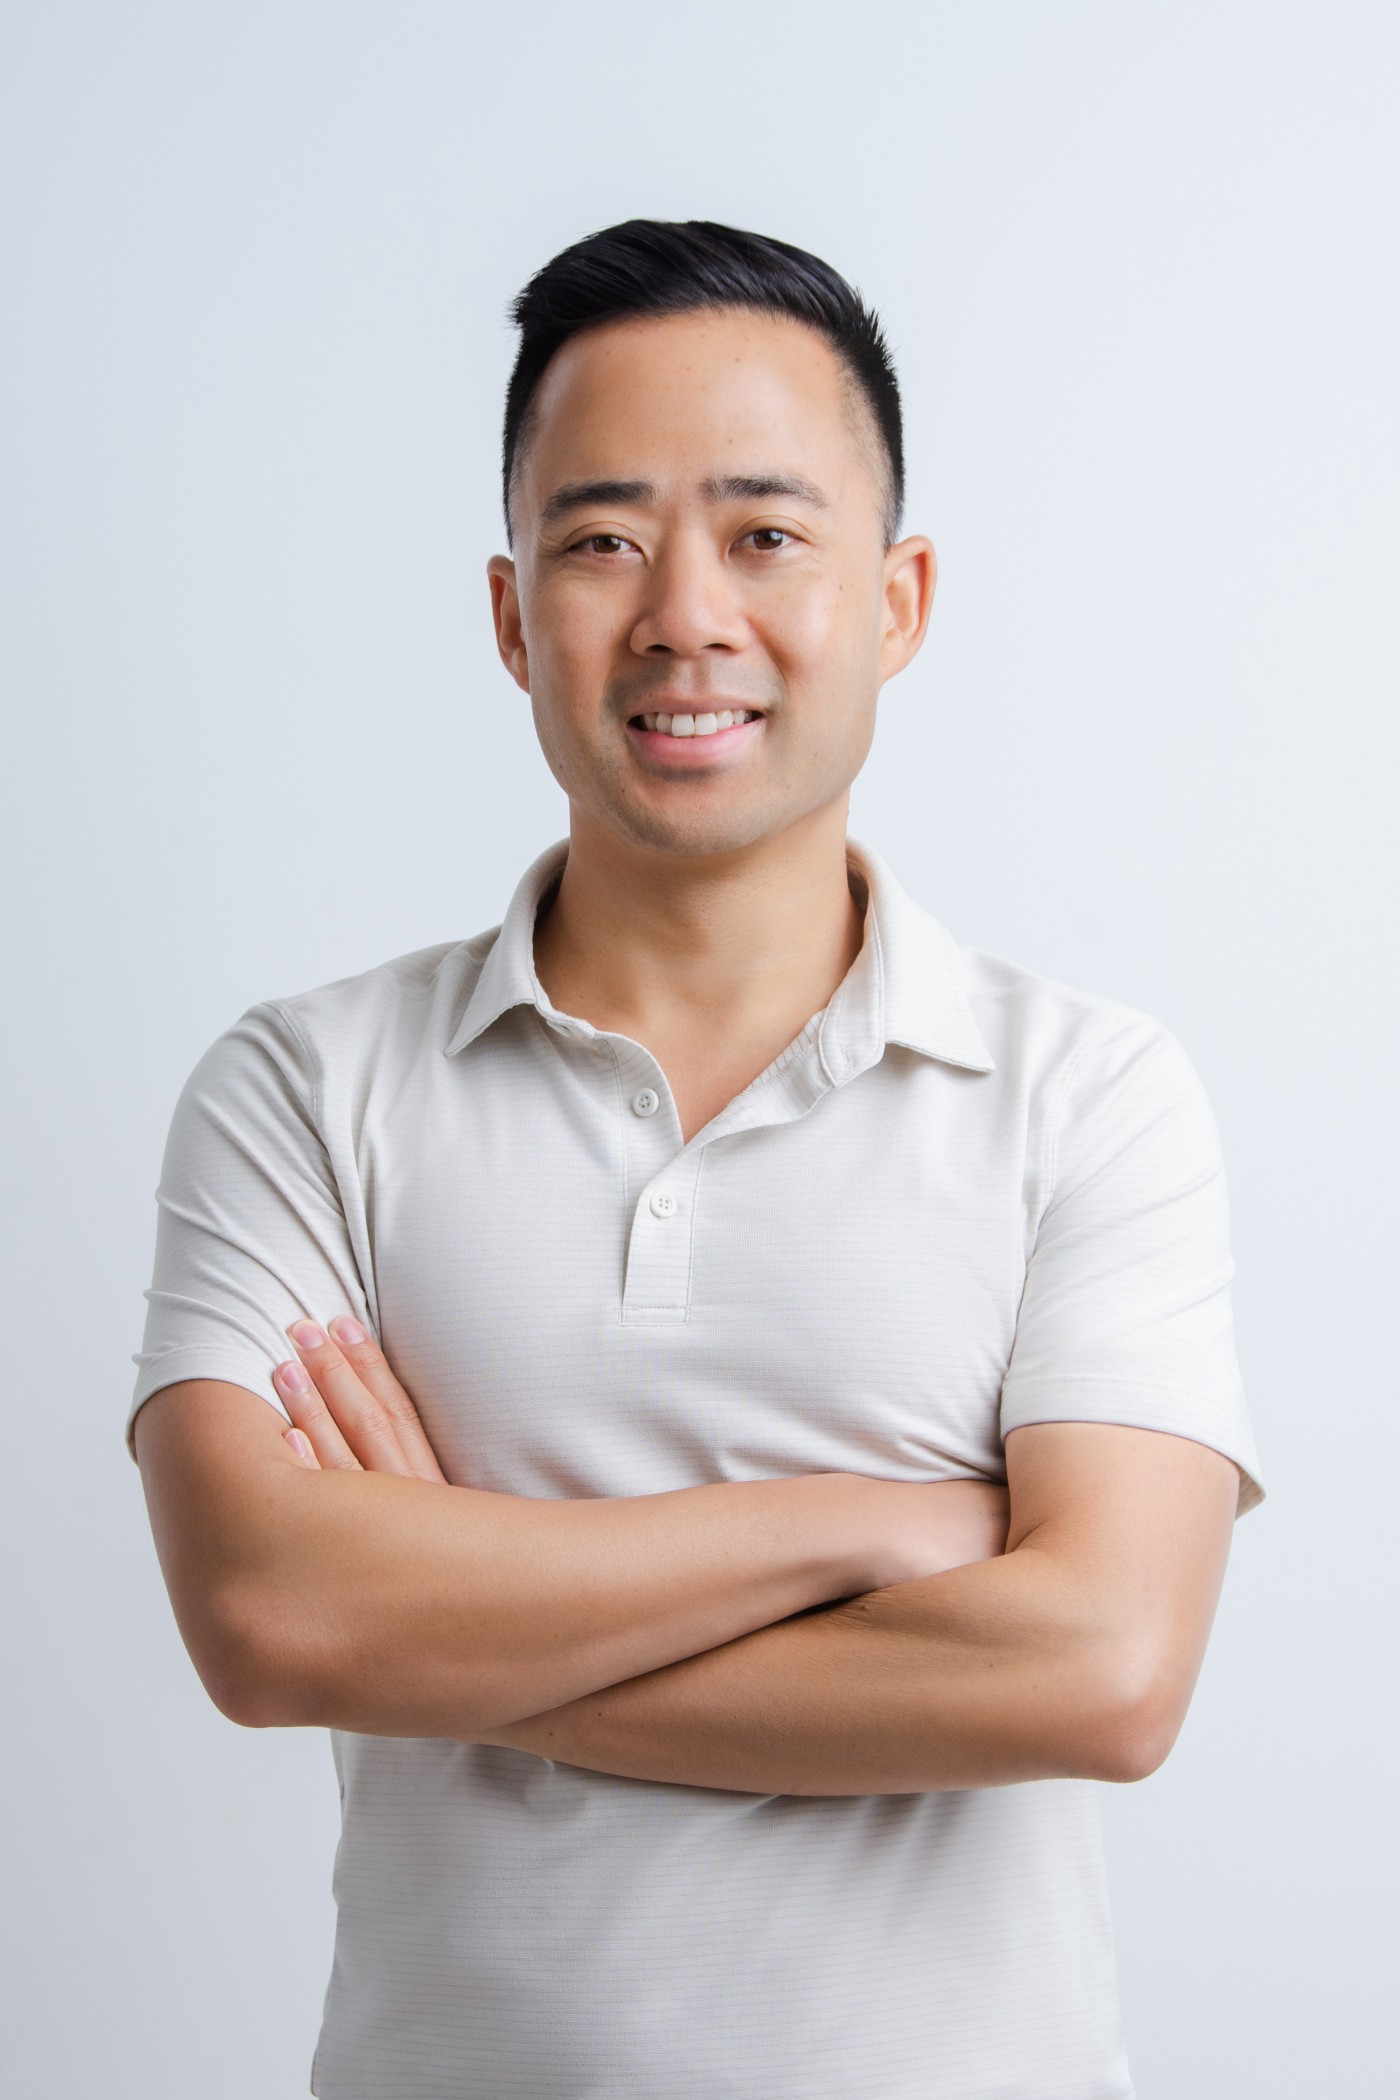 Smiling Eric Siu wearing a white polo shirt